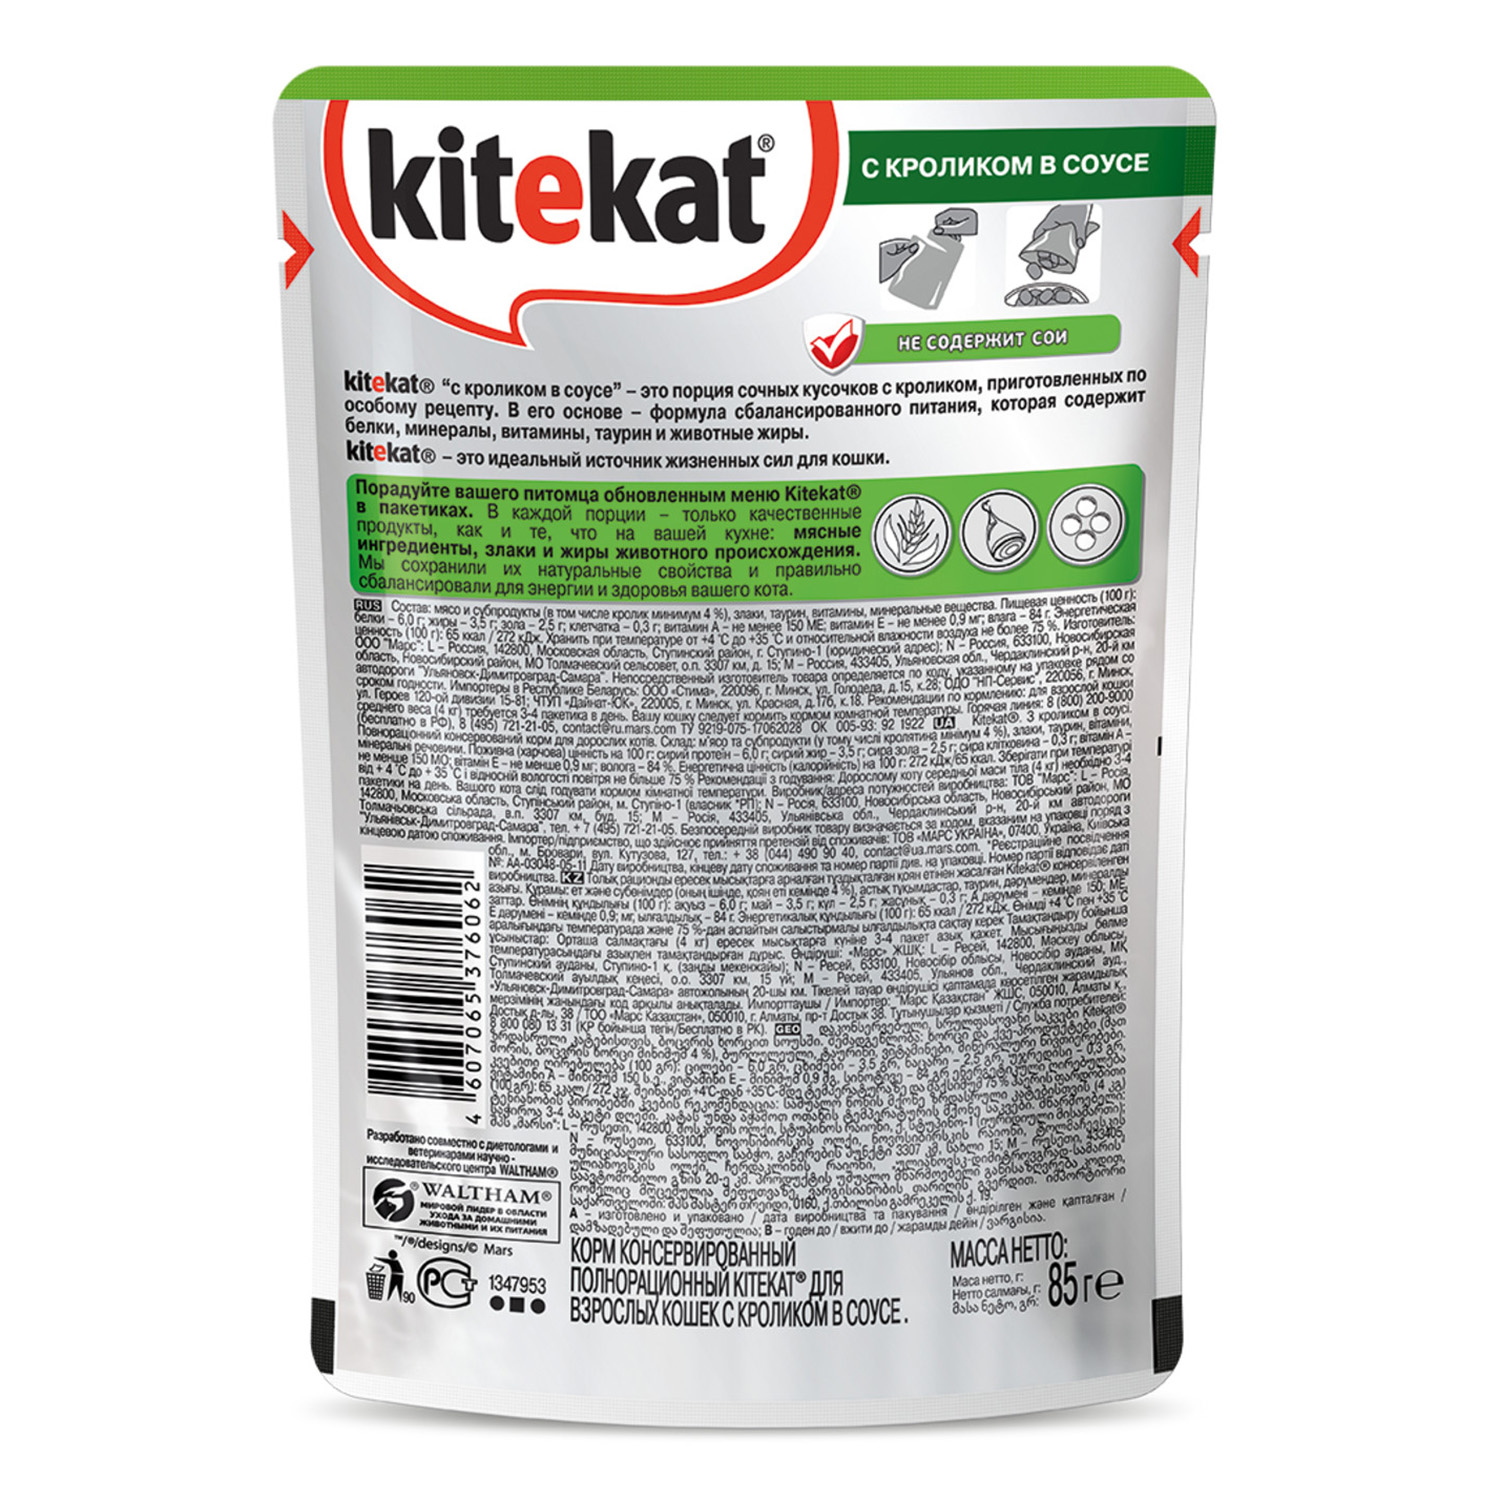 Корм влажный для кошек KiteKat 85г кролик в соусе пауч - фото 2